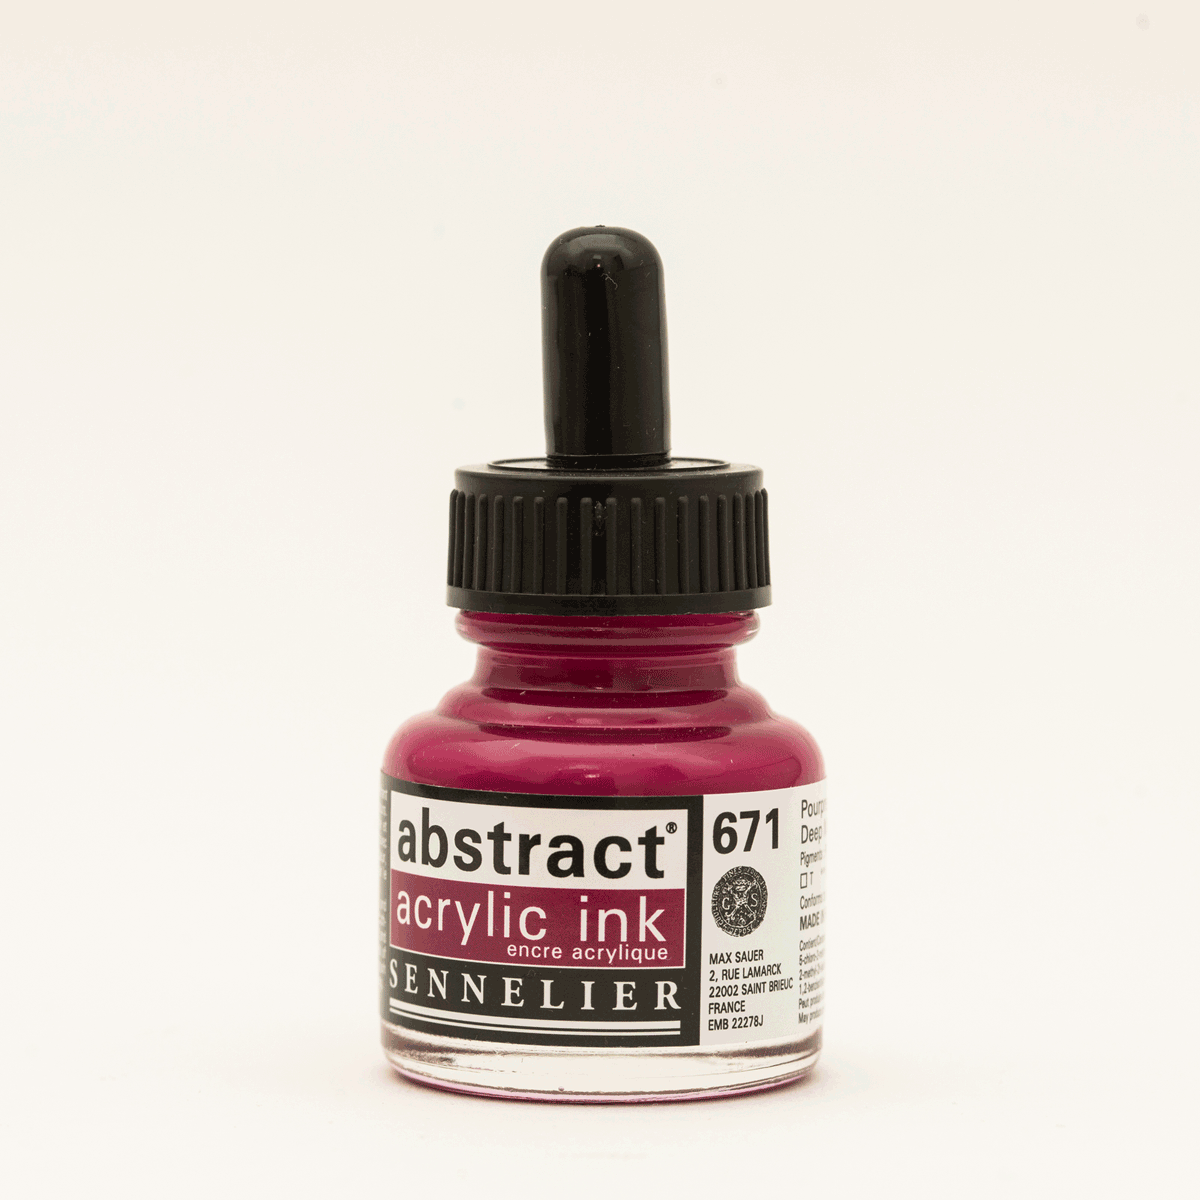 Abstract Acrylic Ink Deep Magenta 30 ml